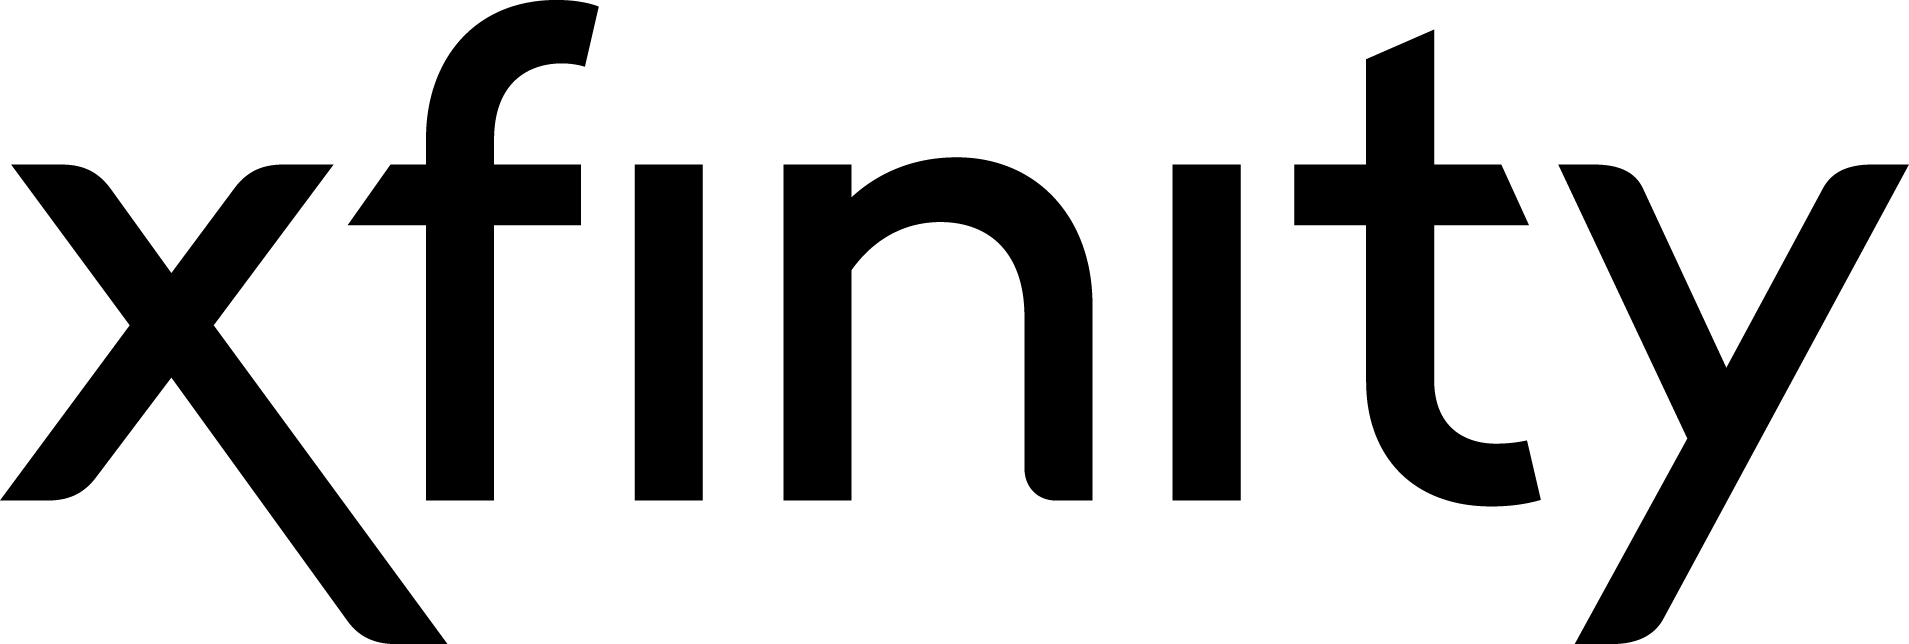 Xfinity_logo_2017_blk_RGB (002)